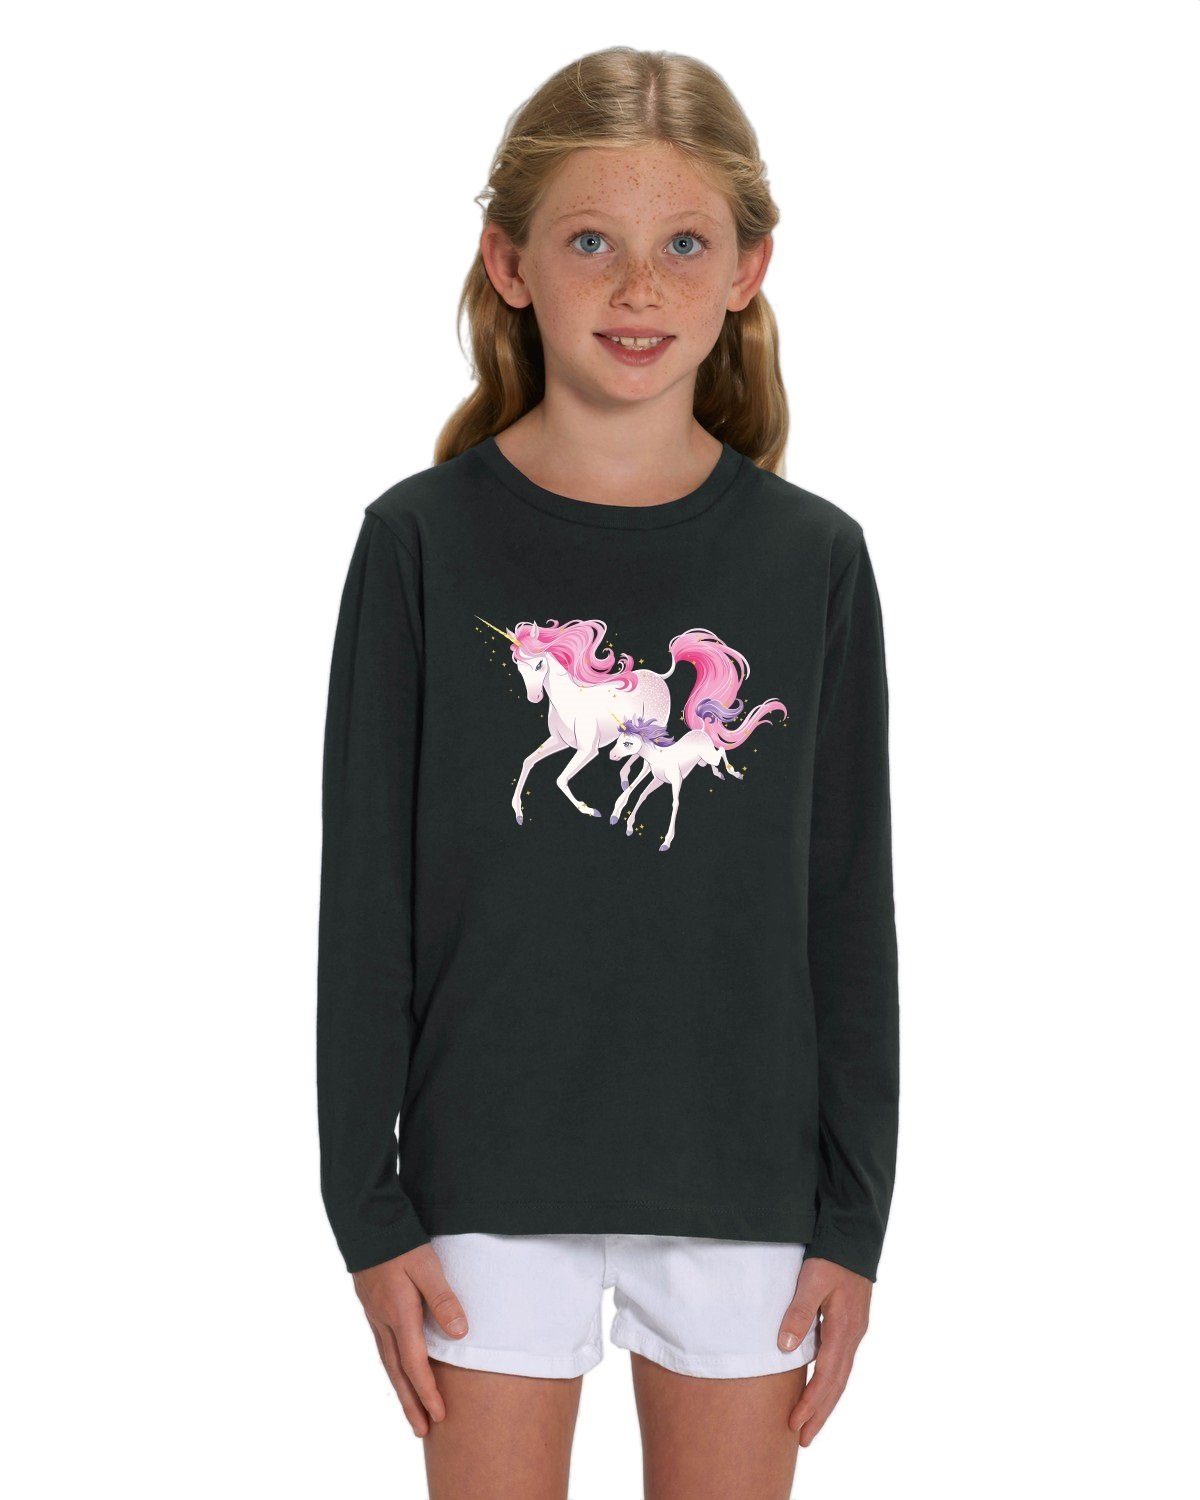 Hilltop Print-Shirt »Hochwertiges Kinder Mädchen Langarm T-Shirt aus 100%  Bio Baumwolle mit wunderschönem Einhorn Motiv, Premium Kinder Tshirt für  Freizeit und Sport« online kaufen | OTTO